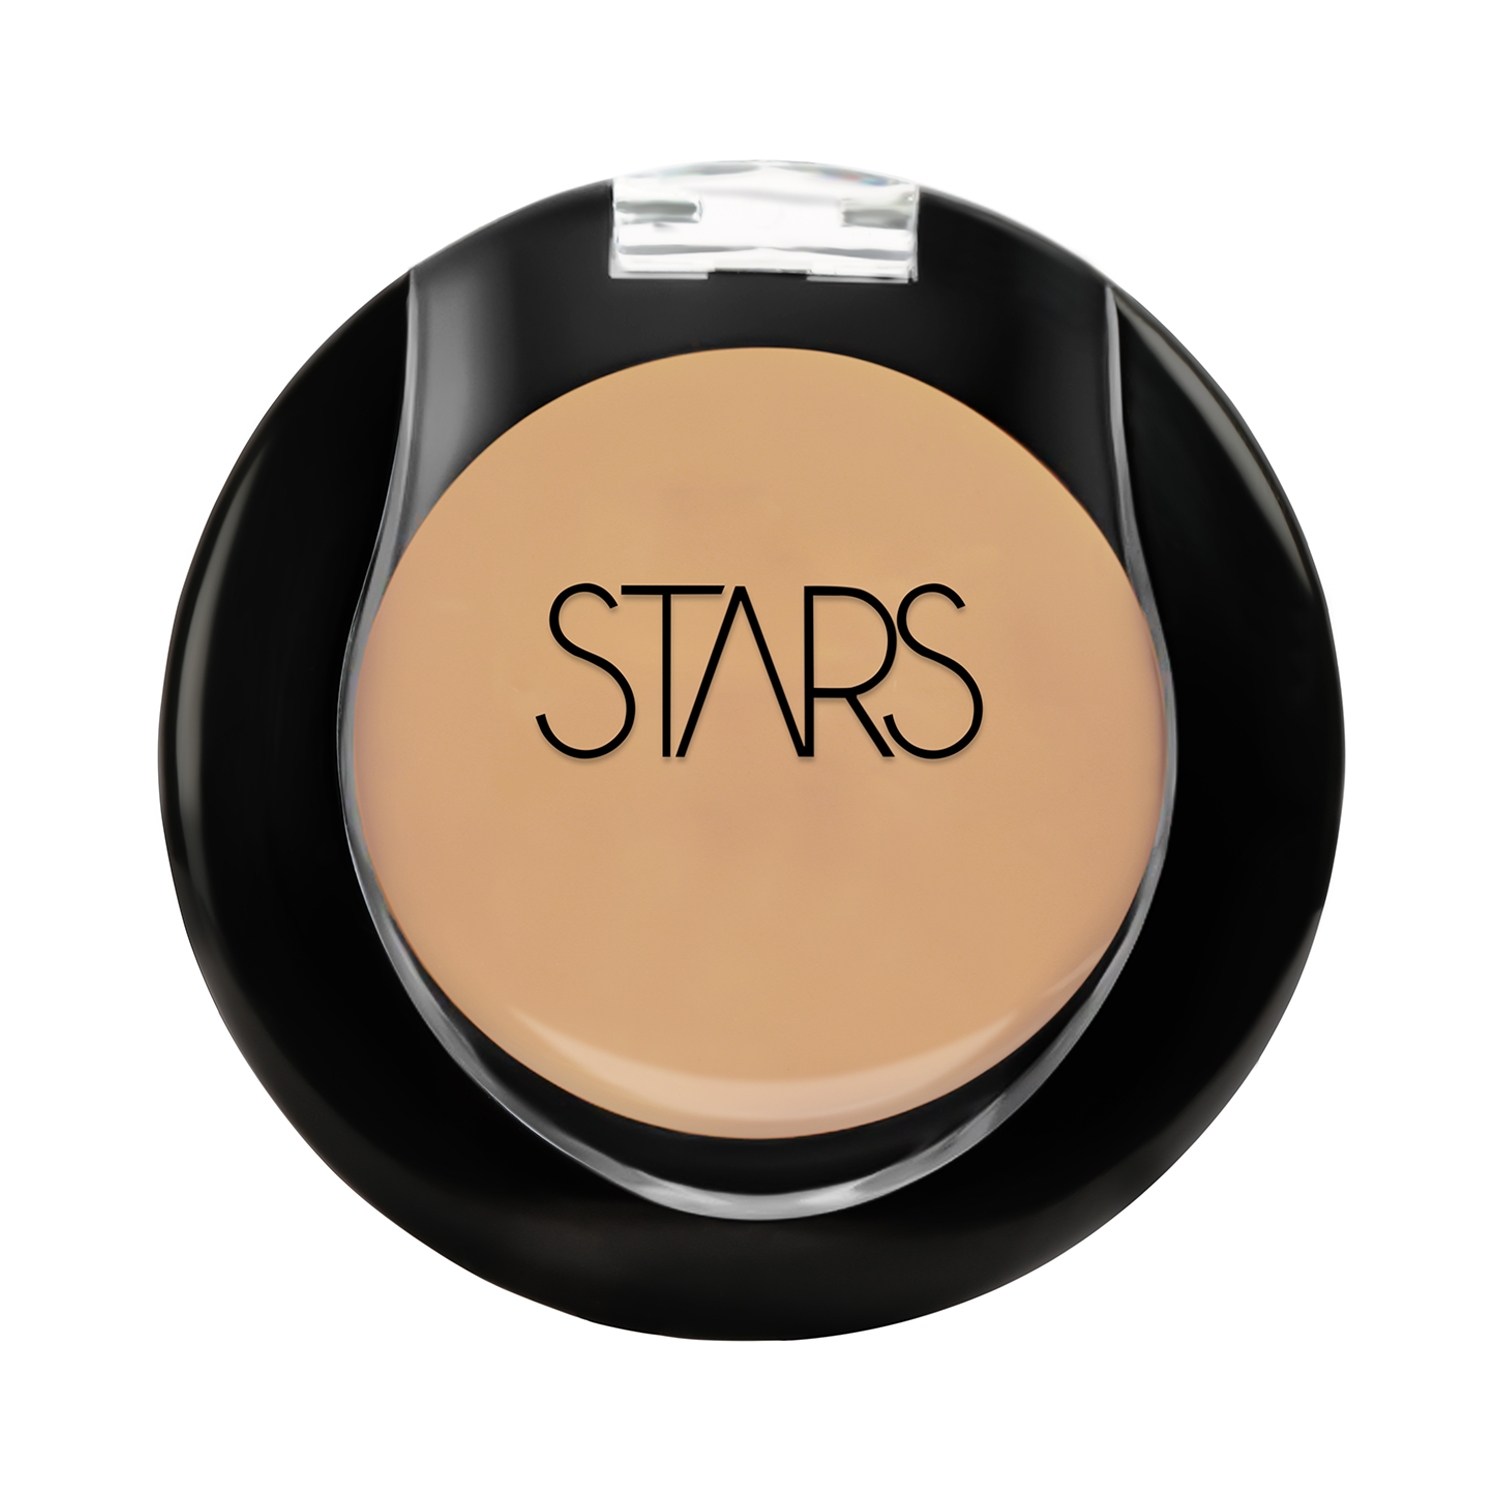 Stars Cosmetics Radiant Finish Full Coverage Face Makeup Cream Concealer - Medium (5g)